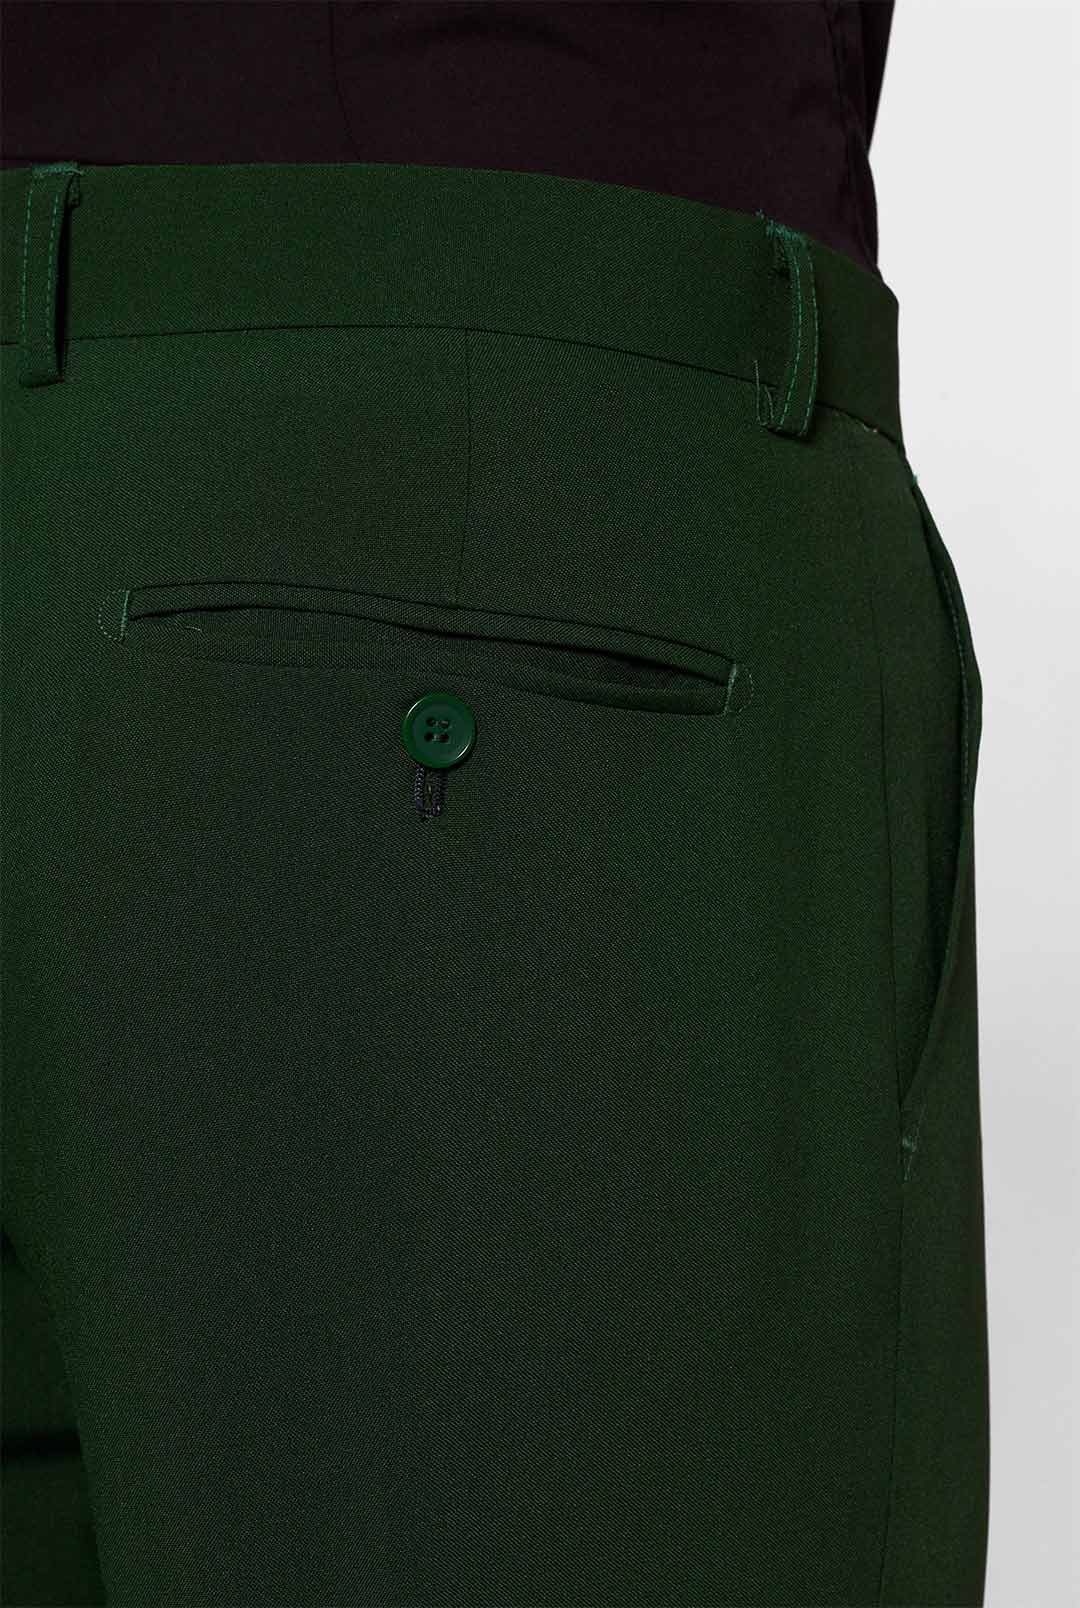 RYTEJFES Suits+&+Jackets+For Boys Green 170 164 158 176 Slim Fit Suit  Leisure Suit Suit Trousers Wedding Suit Jacket Trousers Traditional Suit  Suits Trouser Suits, Wine 3-piece set, L : Amazon.co.uk: Fashion